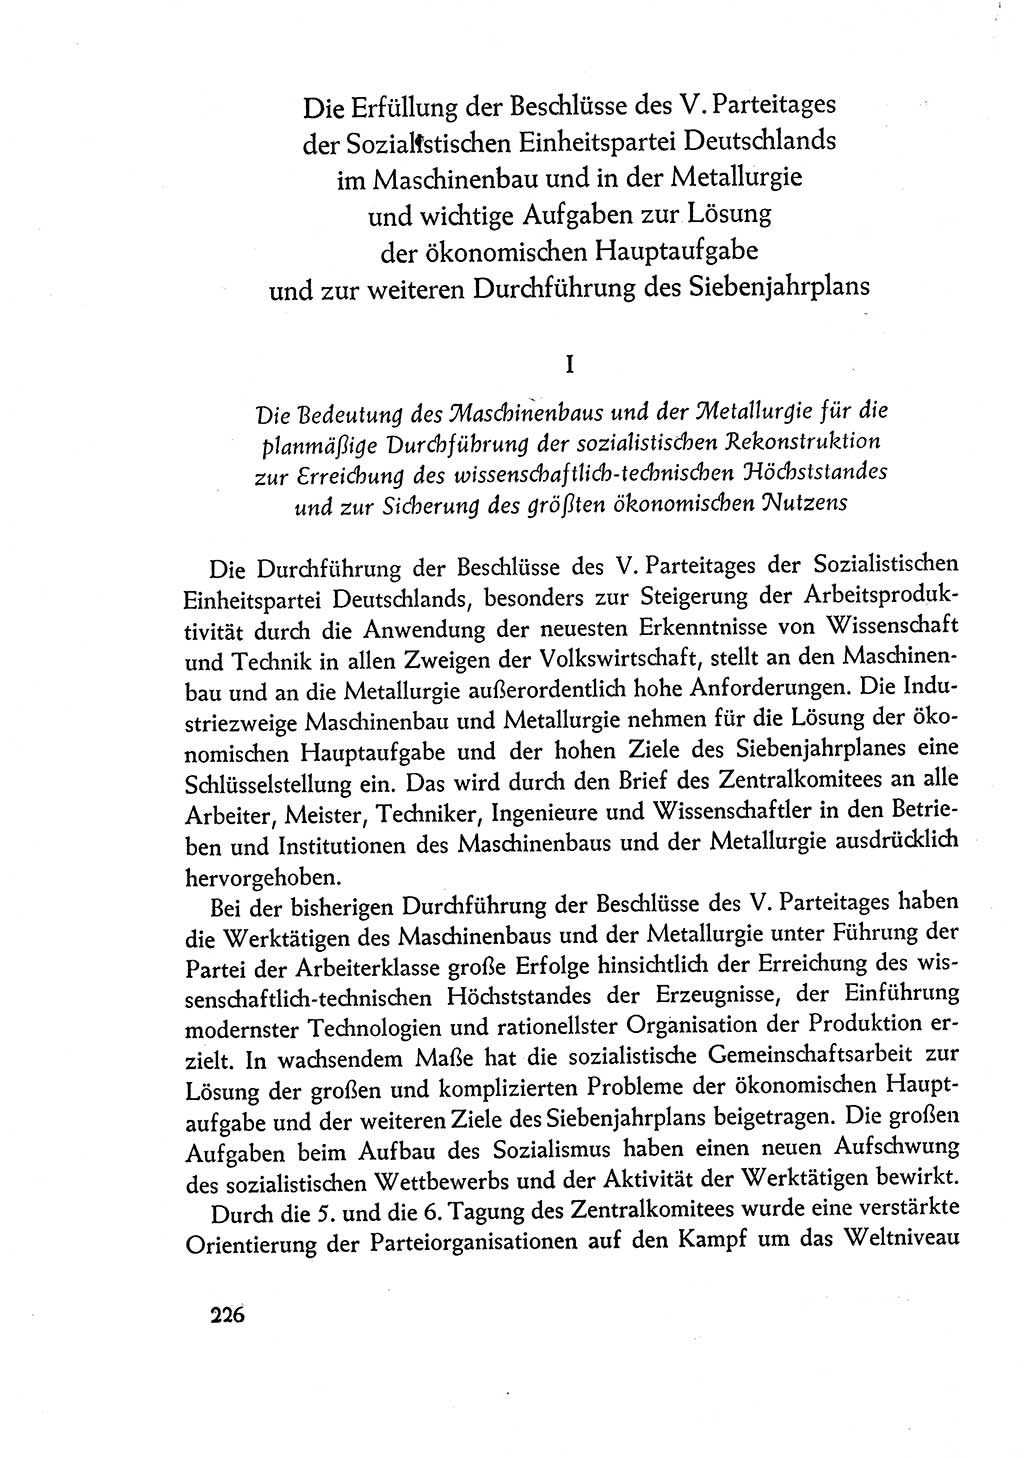 Dokumente der Sozialistischen Einheitspartei Deutschlands (SED) [Deutsche Demokratische Republik (DDR)] 1960-1961, Seite 226 (Dok. SED DDR 1960-1961, S. 226)